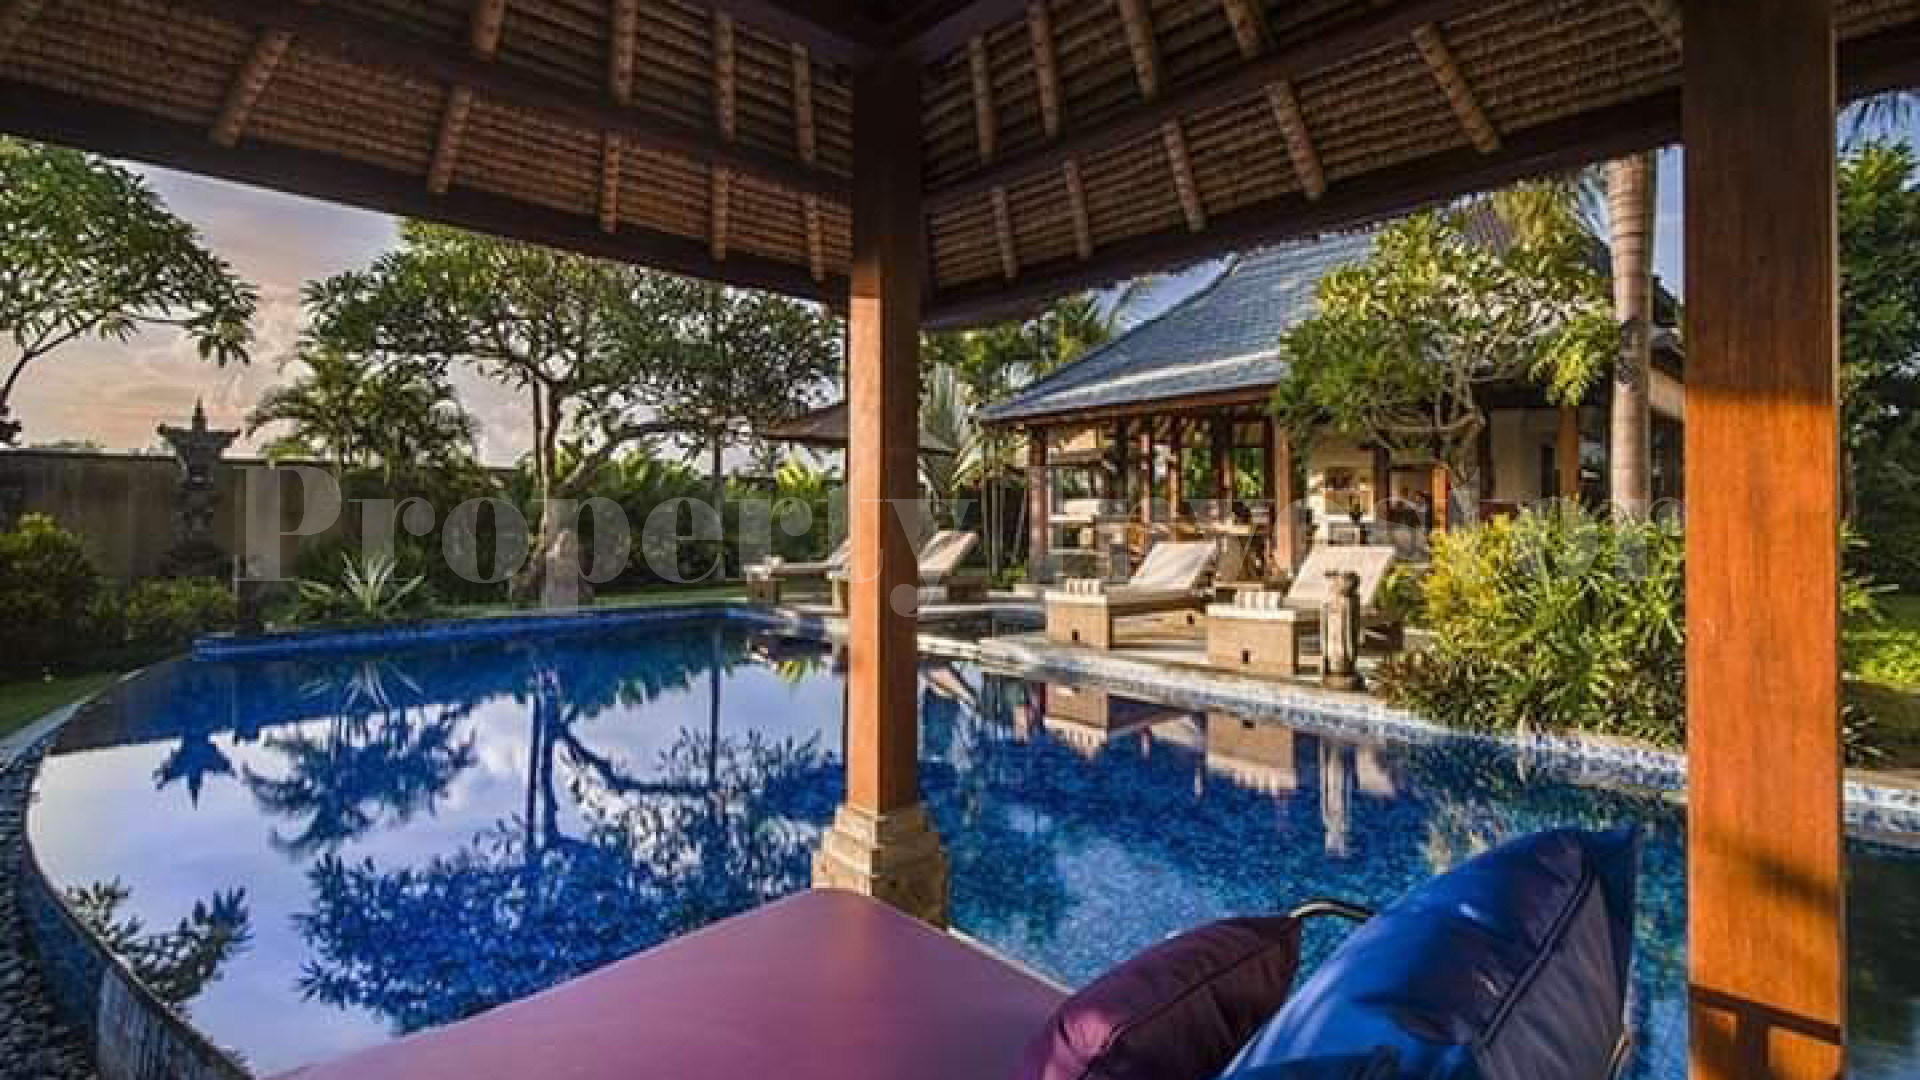 Современная вилла с 3 спальнями в традиционном стиле на Бали